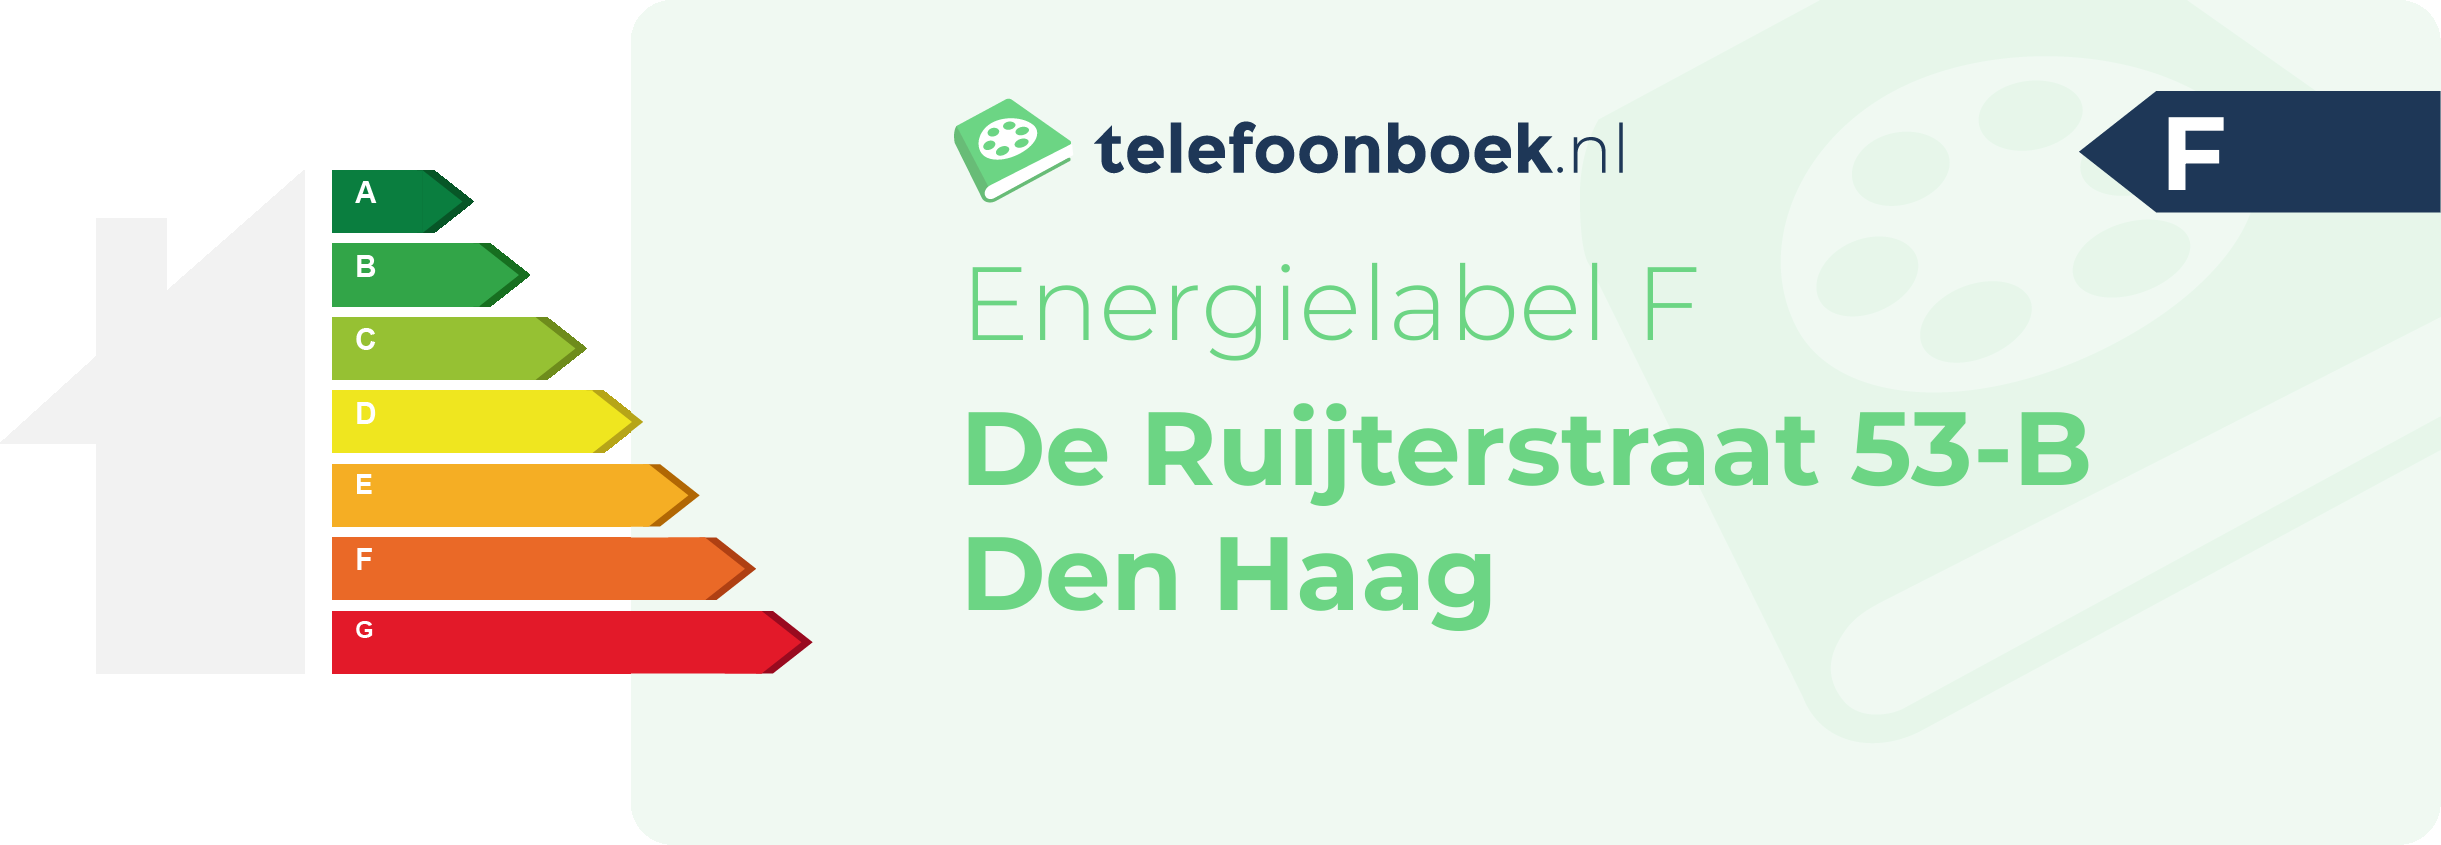 Energielabel De Ruijterstraat 53-B Den Haag